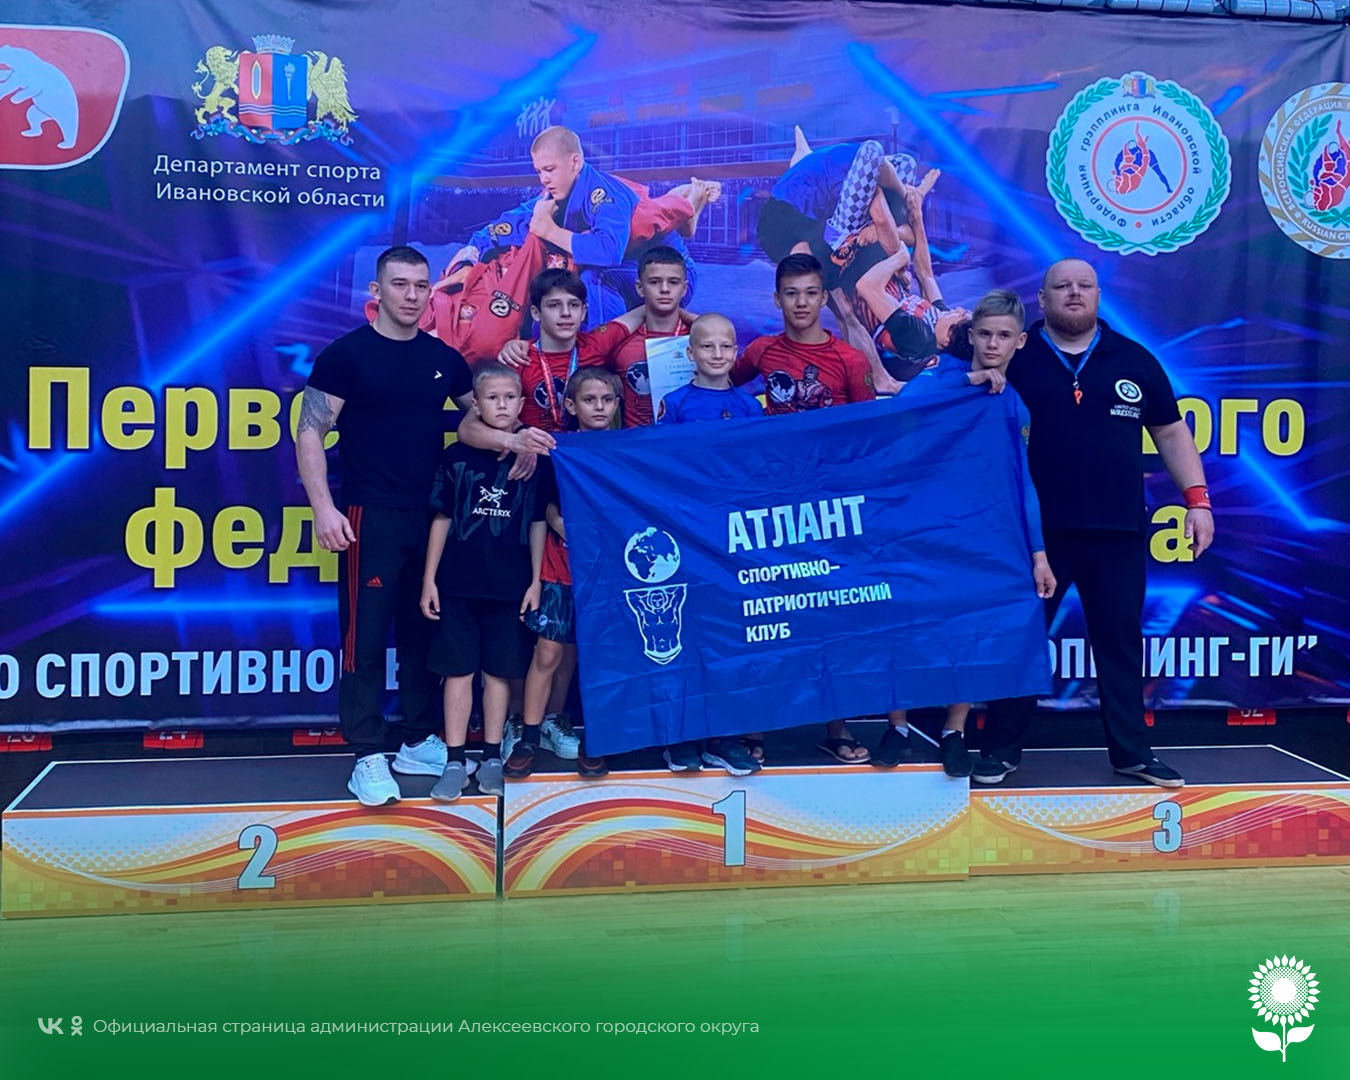 Спортсмены Алексеевского городского округа стали призёрами в Первенстве ЦФО по спортивной борьбе в дисциплинах грэпплинг и грэпплинг-ги.